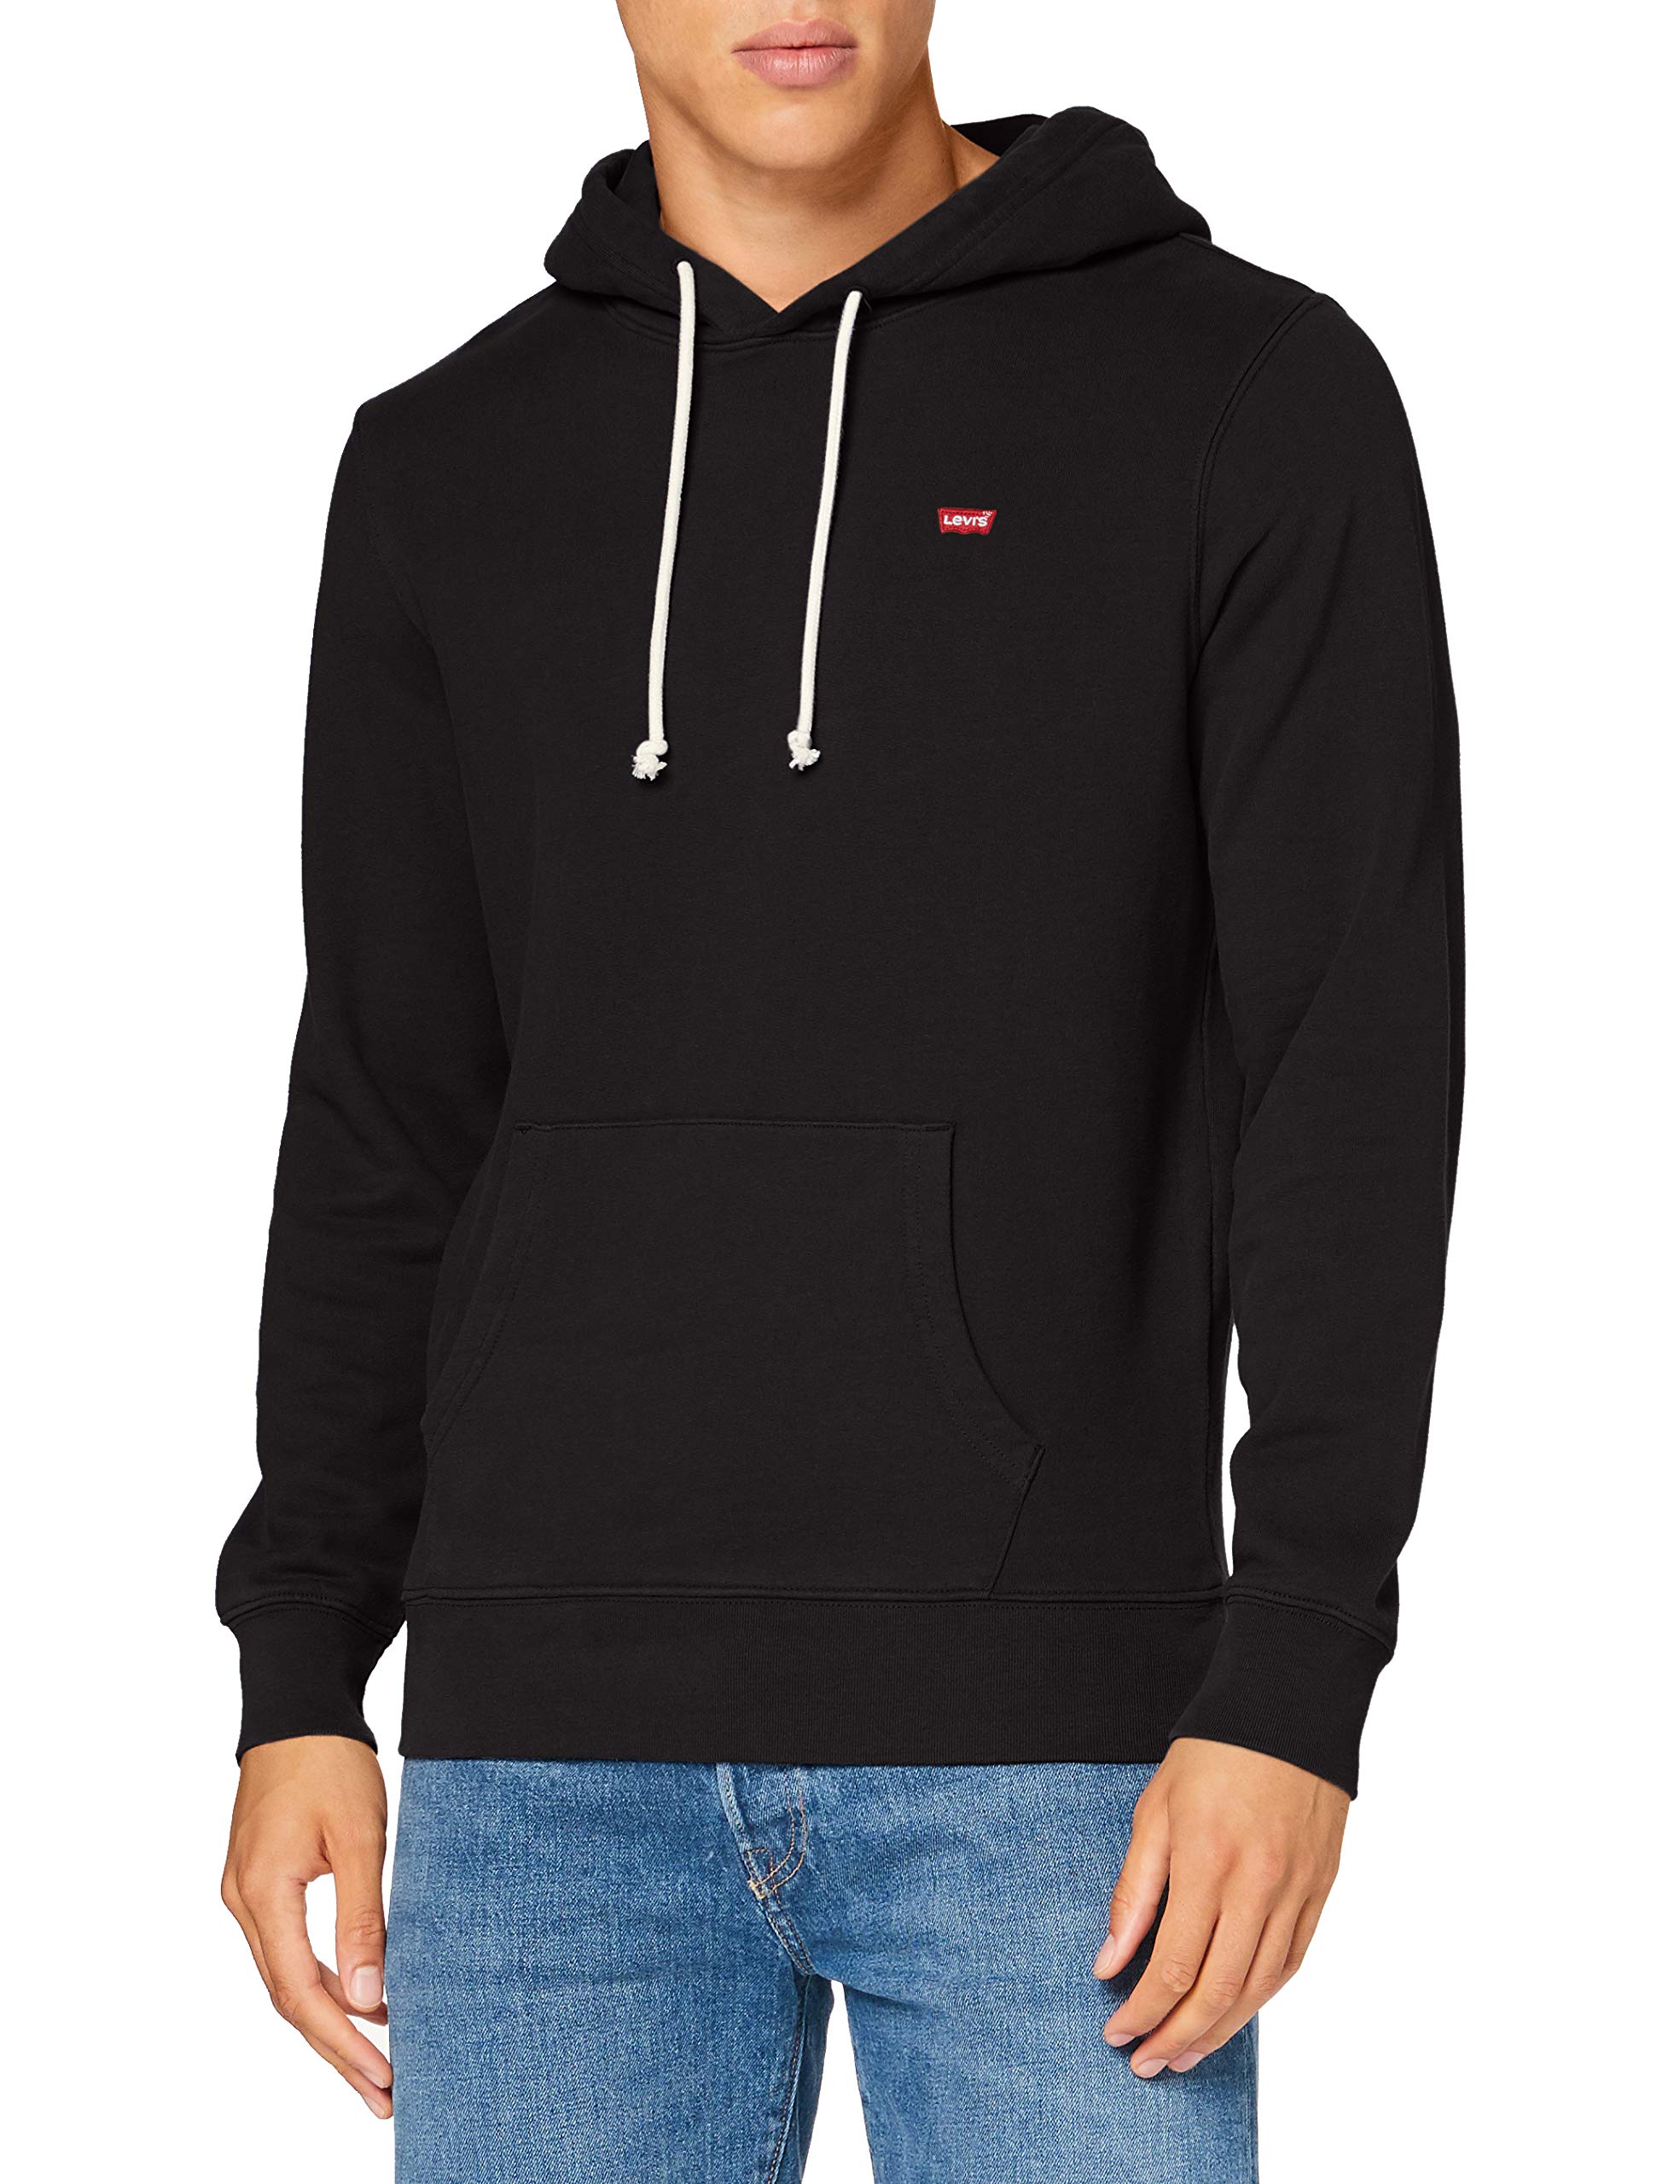 Descubrir 62+ imagen levi’s men’s hoodie hooded sweatshirt